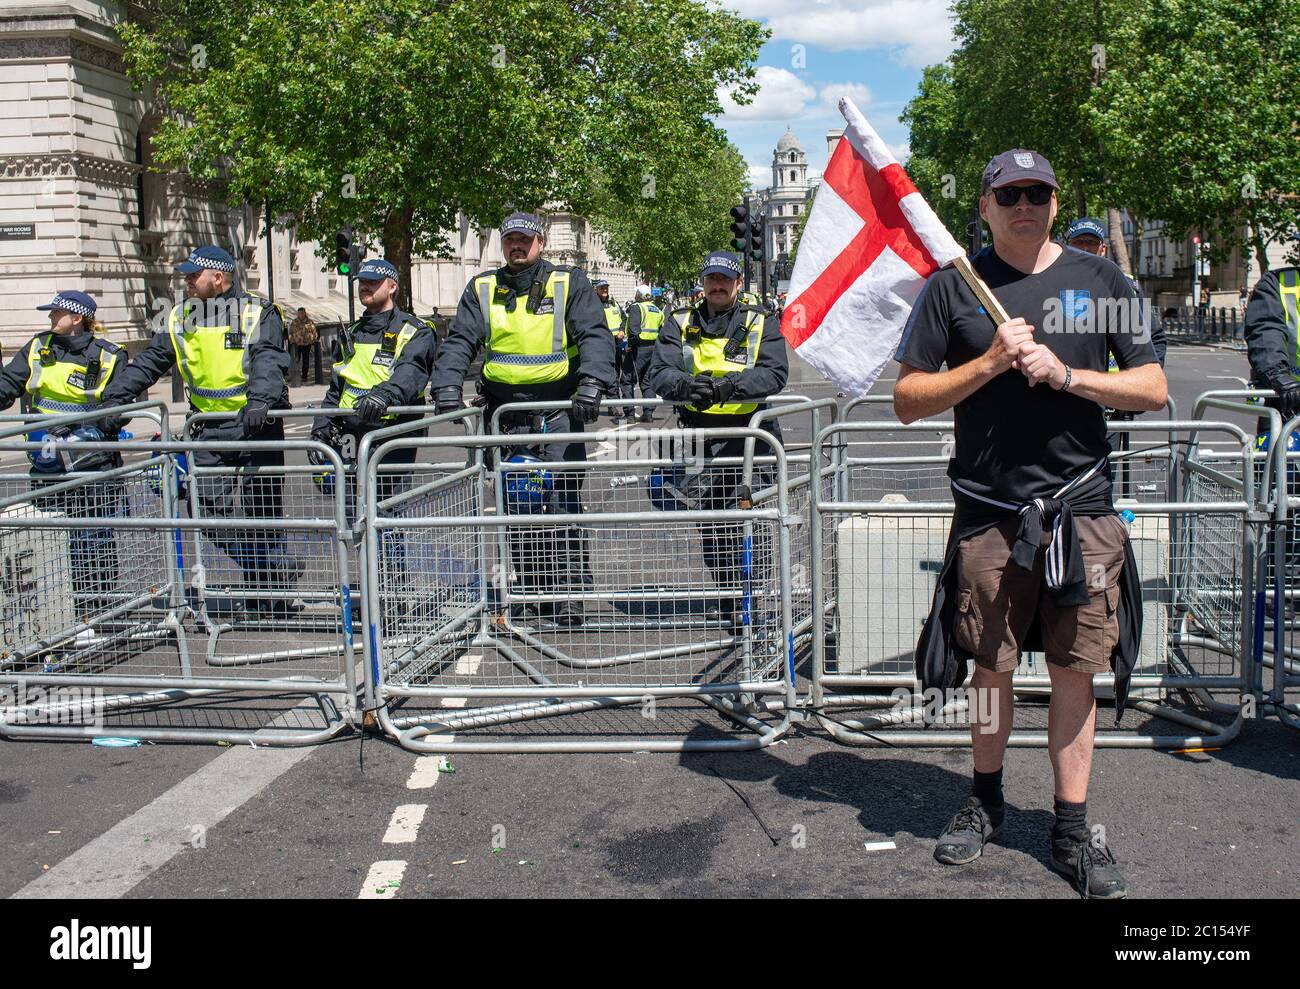 La polizia di Whitehhall è stata ribattonita dietro le barriere, impedendo ai sostenitori britannici di estrema destra di scontrarsi con i manifestanti anti anti anti-razzismo Black Lives. Foto Stock